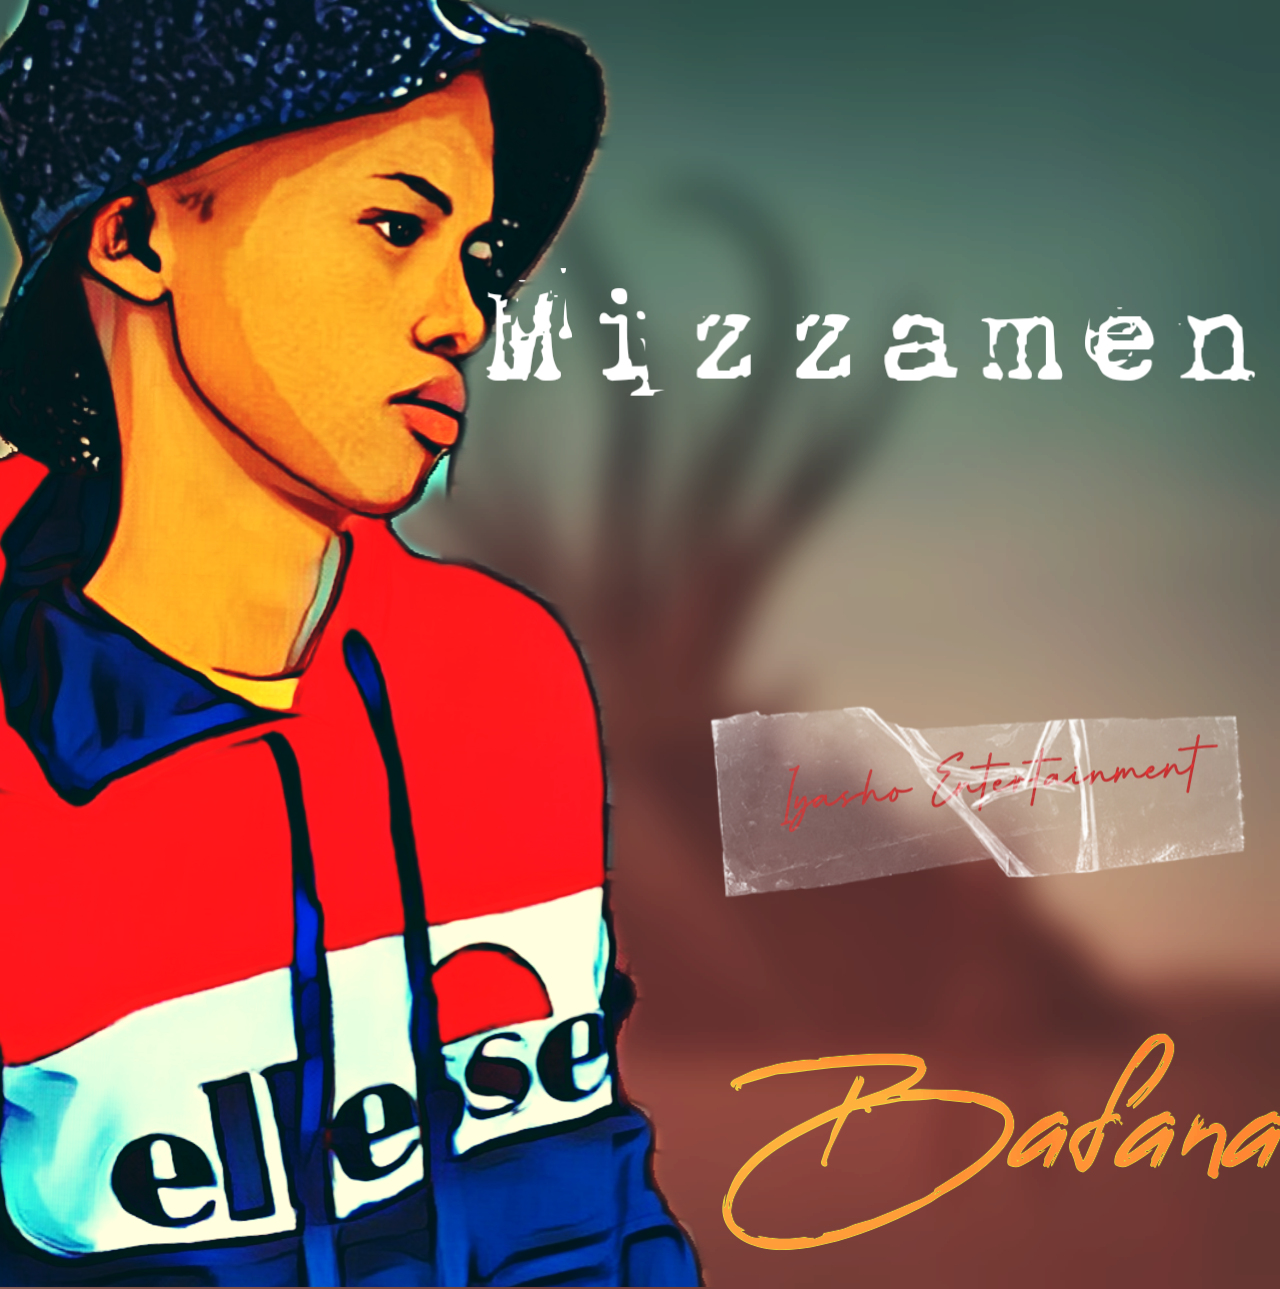 From the past 2.0 - Mizzamen ( bafana's )